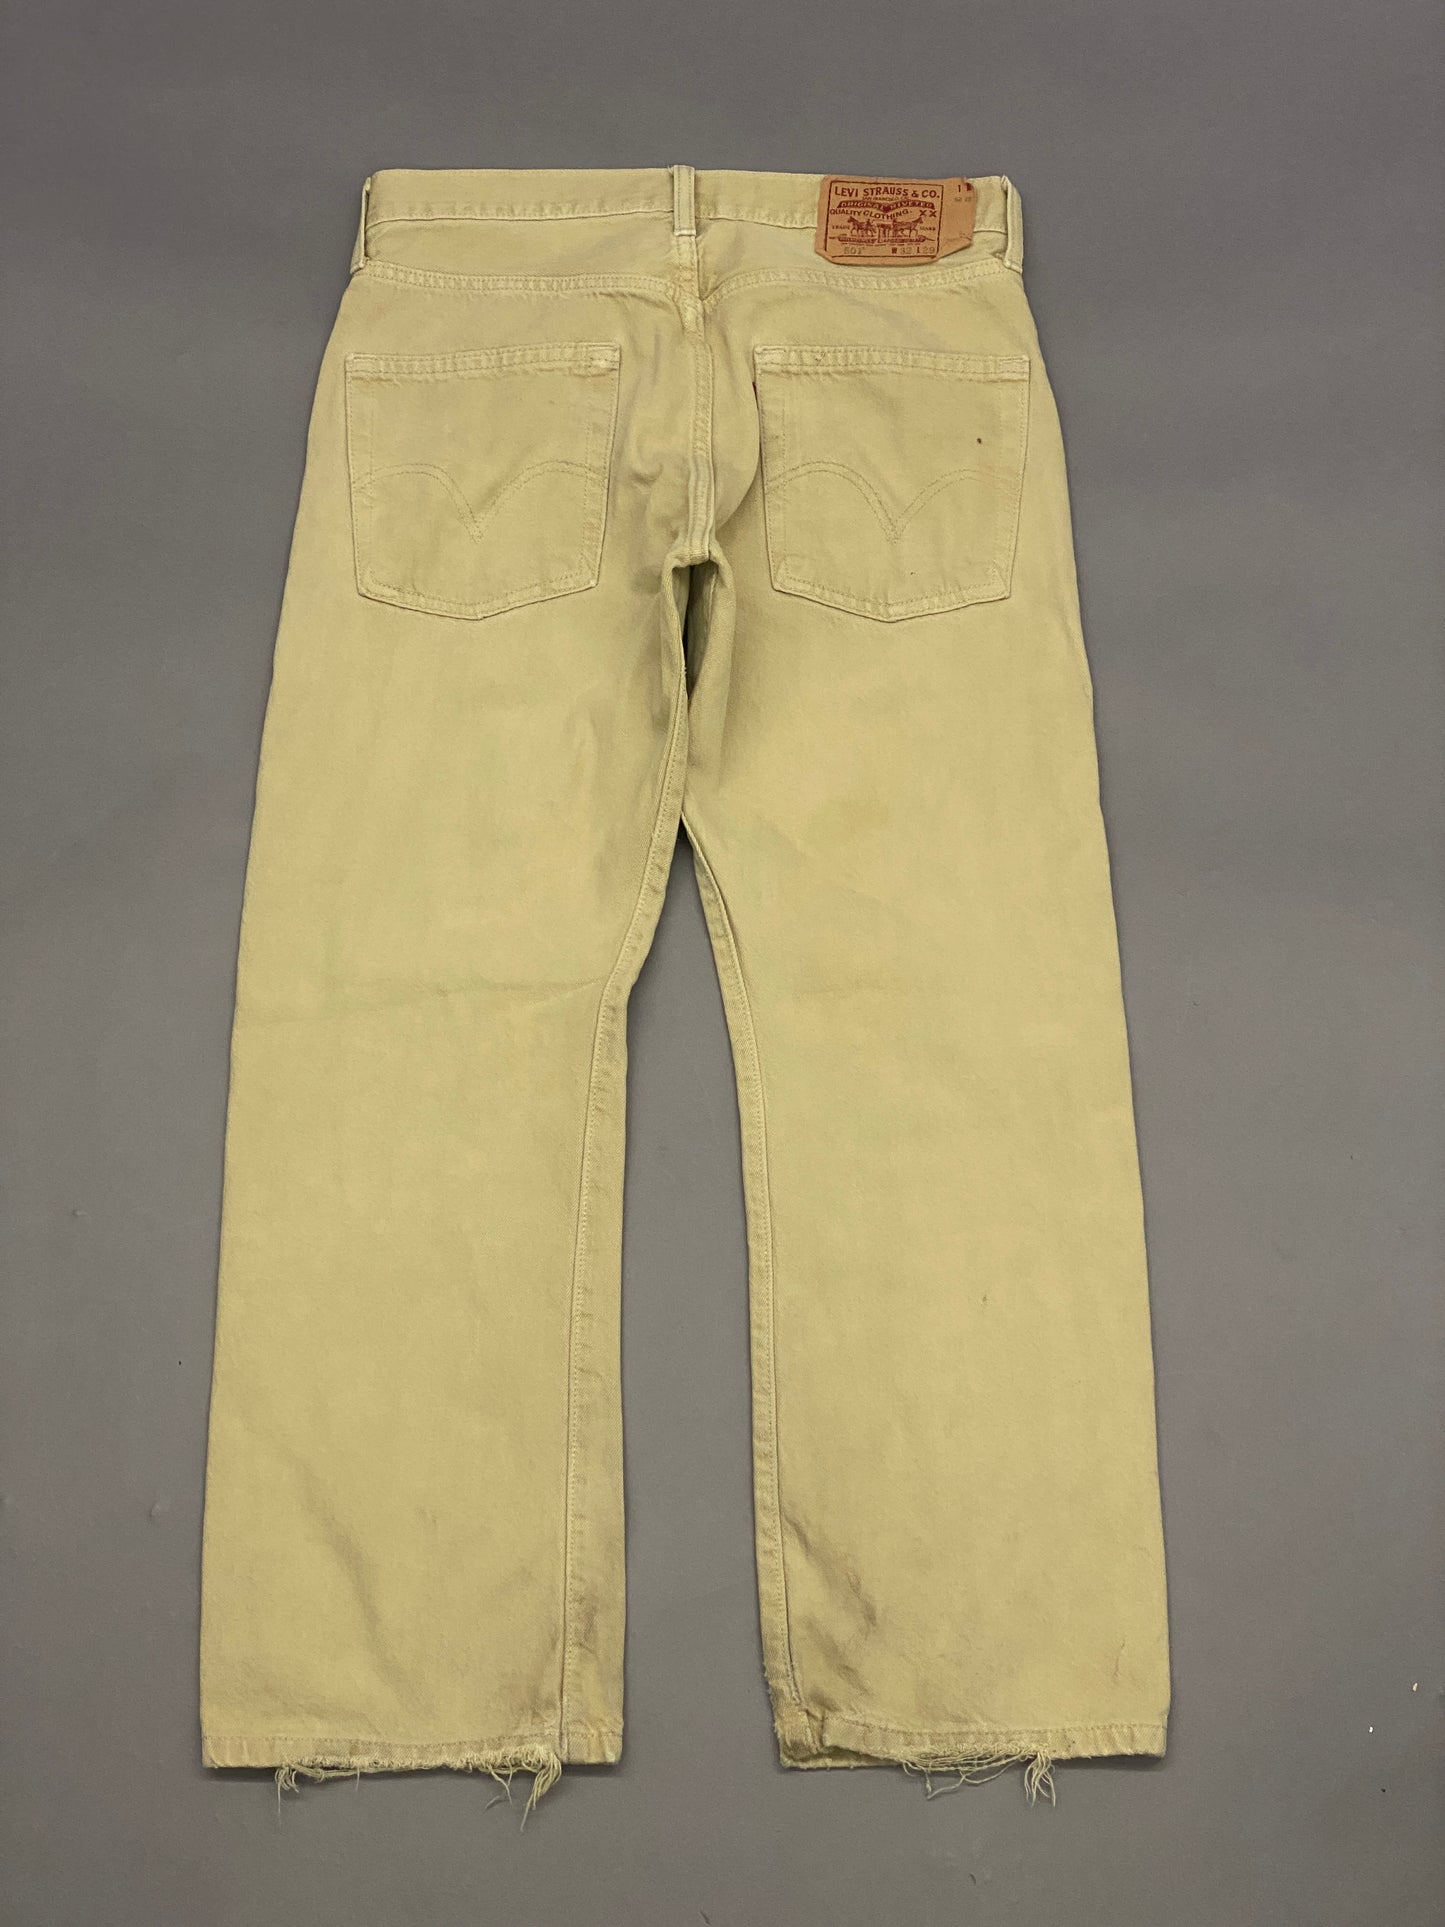 Levis 501 Vintage Jeans - 32x29